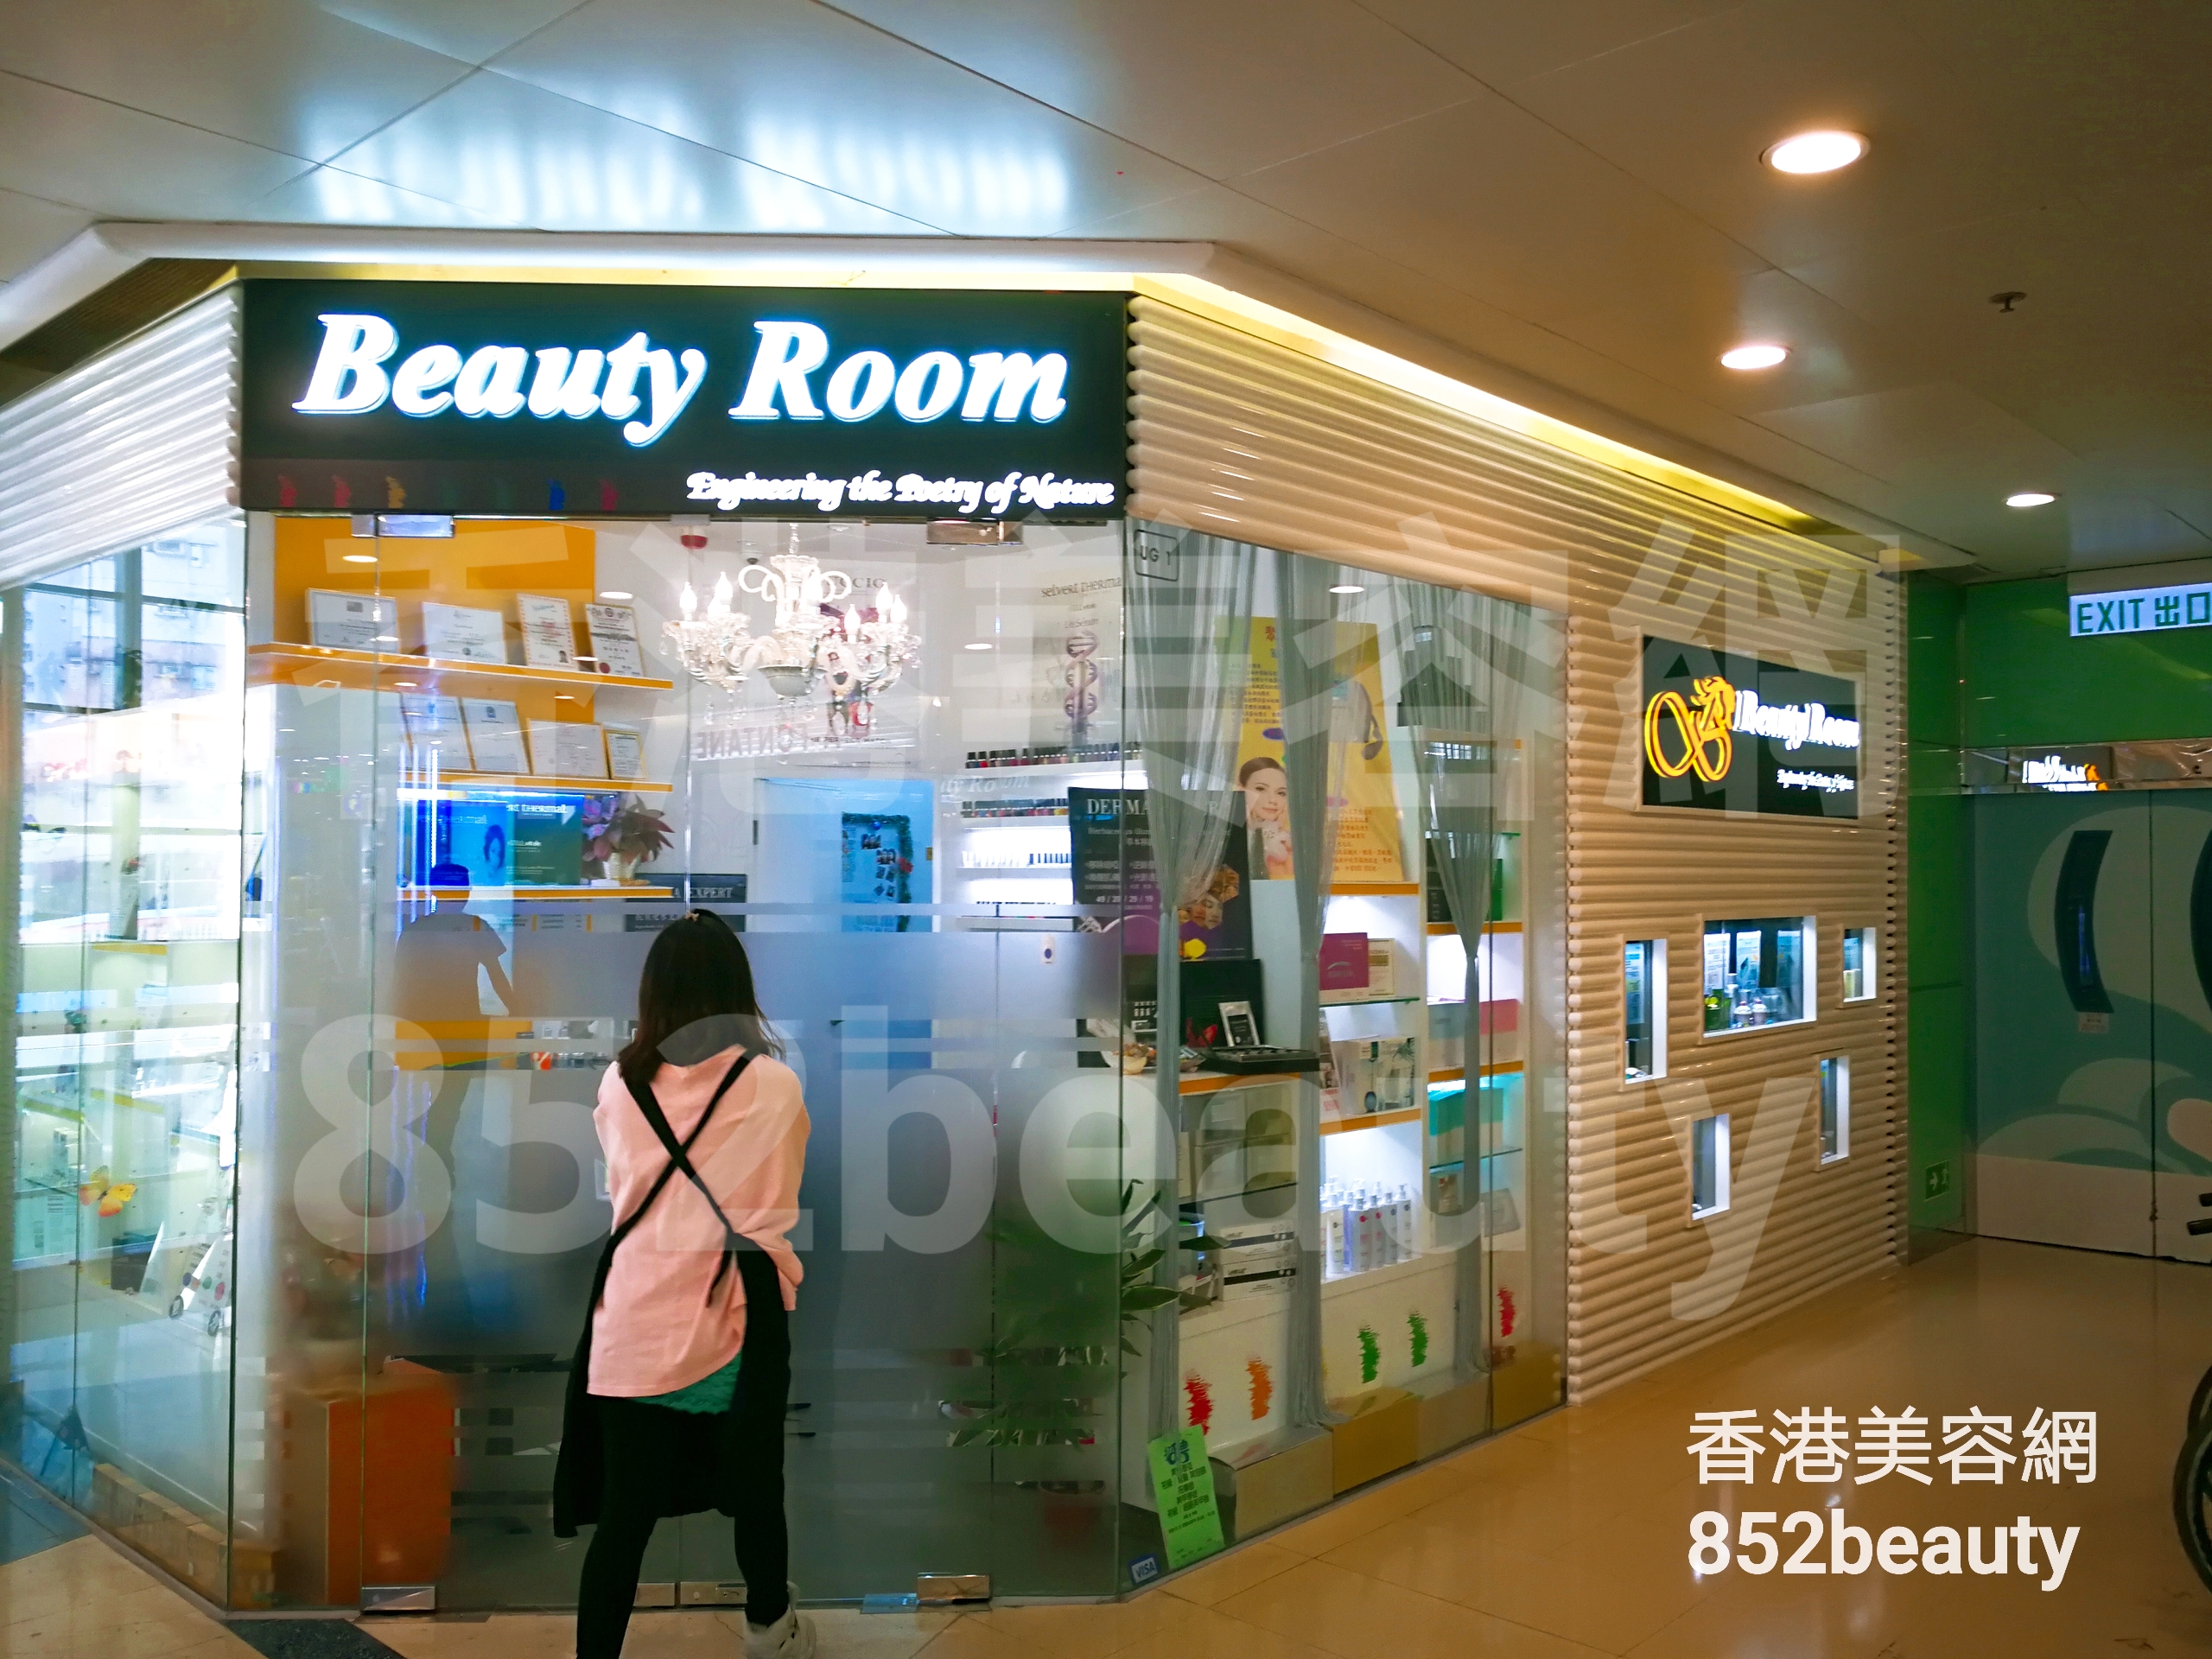 按摩/SPA: Beauty Room